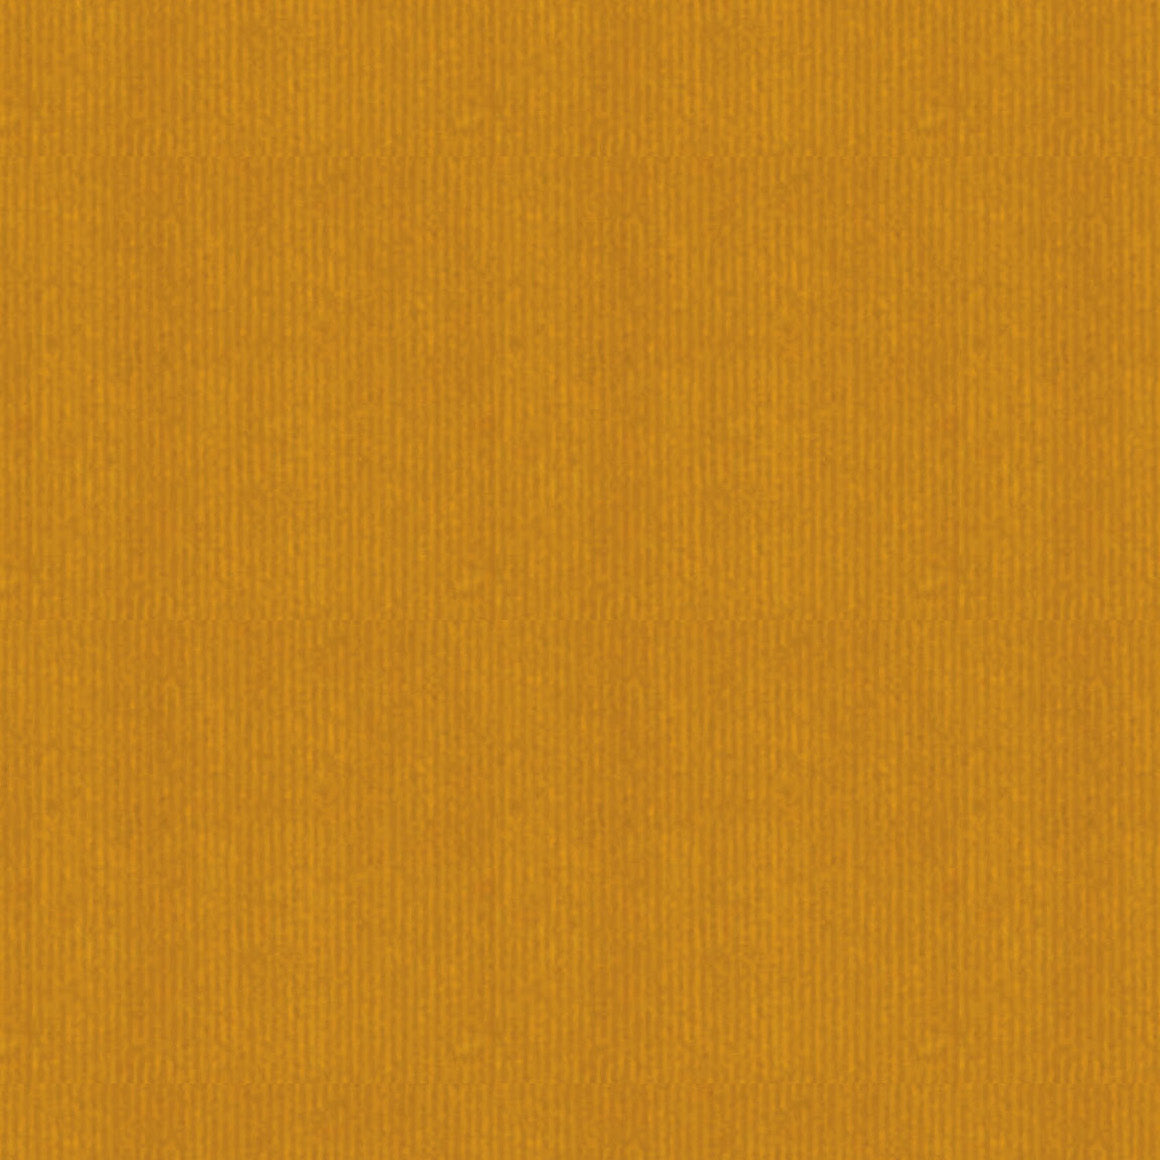 DittaDisplay Rouleau papier couleur jaune moutarde sur kraft brun vergé mustard yellow color paper roll on brown kraft laid paper senfgelb Papierrolle auf braunem Kraft-Büttenpapier